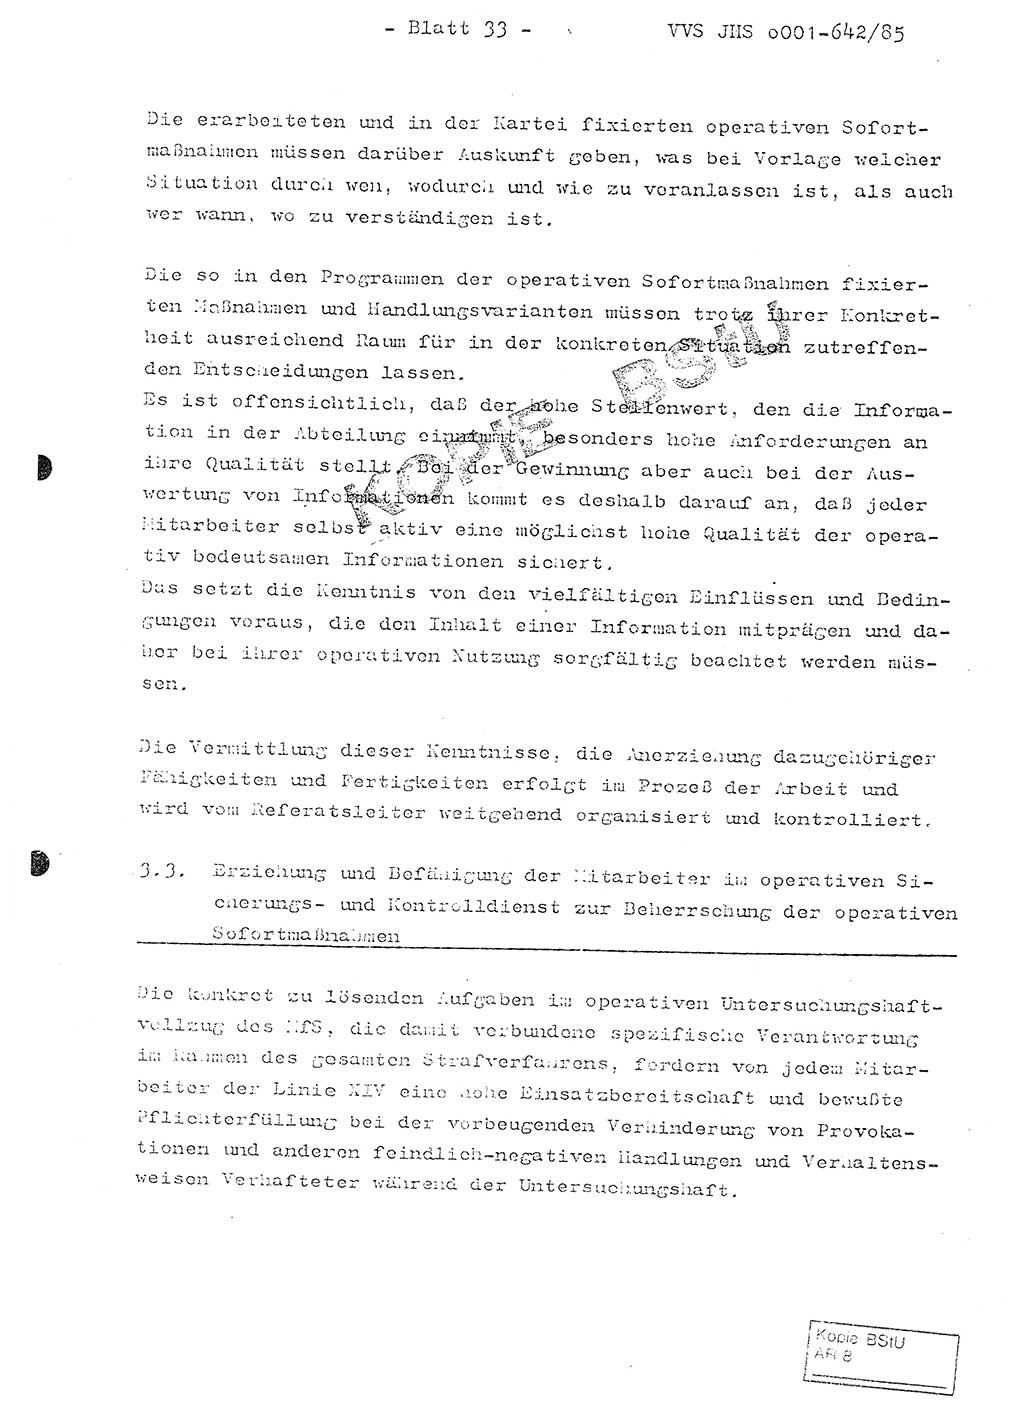 Fachschulabschlußarbeit Oberleutnant Lothar Fahland (Abt. ⅩⅣ), Ministerium für Staatssicherheit (MfS) [Deutsche Demokratische Republik (DDR)], Juristische Hochschule (JHS), Vertrauliche Verschlußsache (VVS) o001-642/85, Potsdam 1985, Blatt 33 (FS-Abschl.-Arb. MfS DDR JHS VVS o001-642/85 1985, Bl. 33)